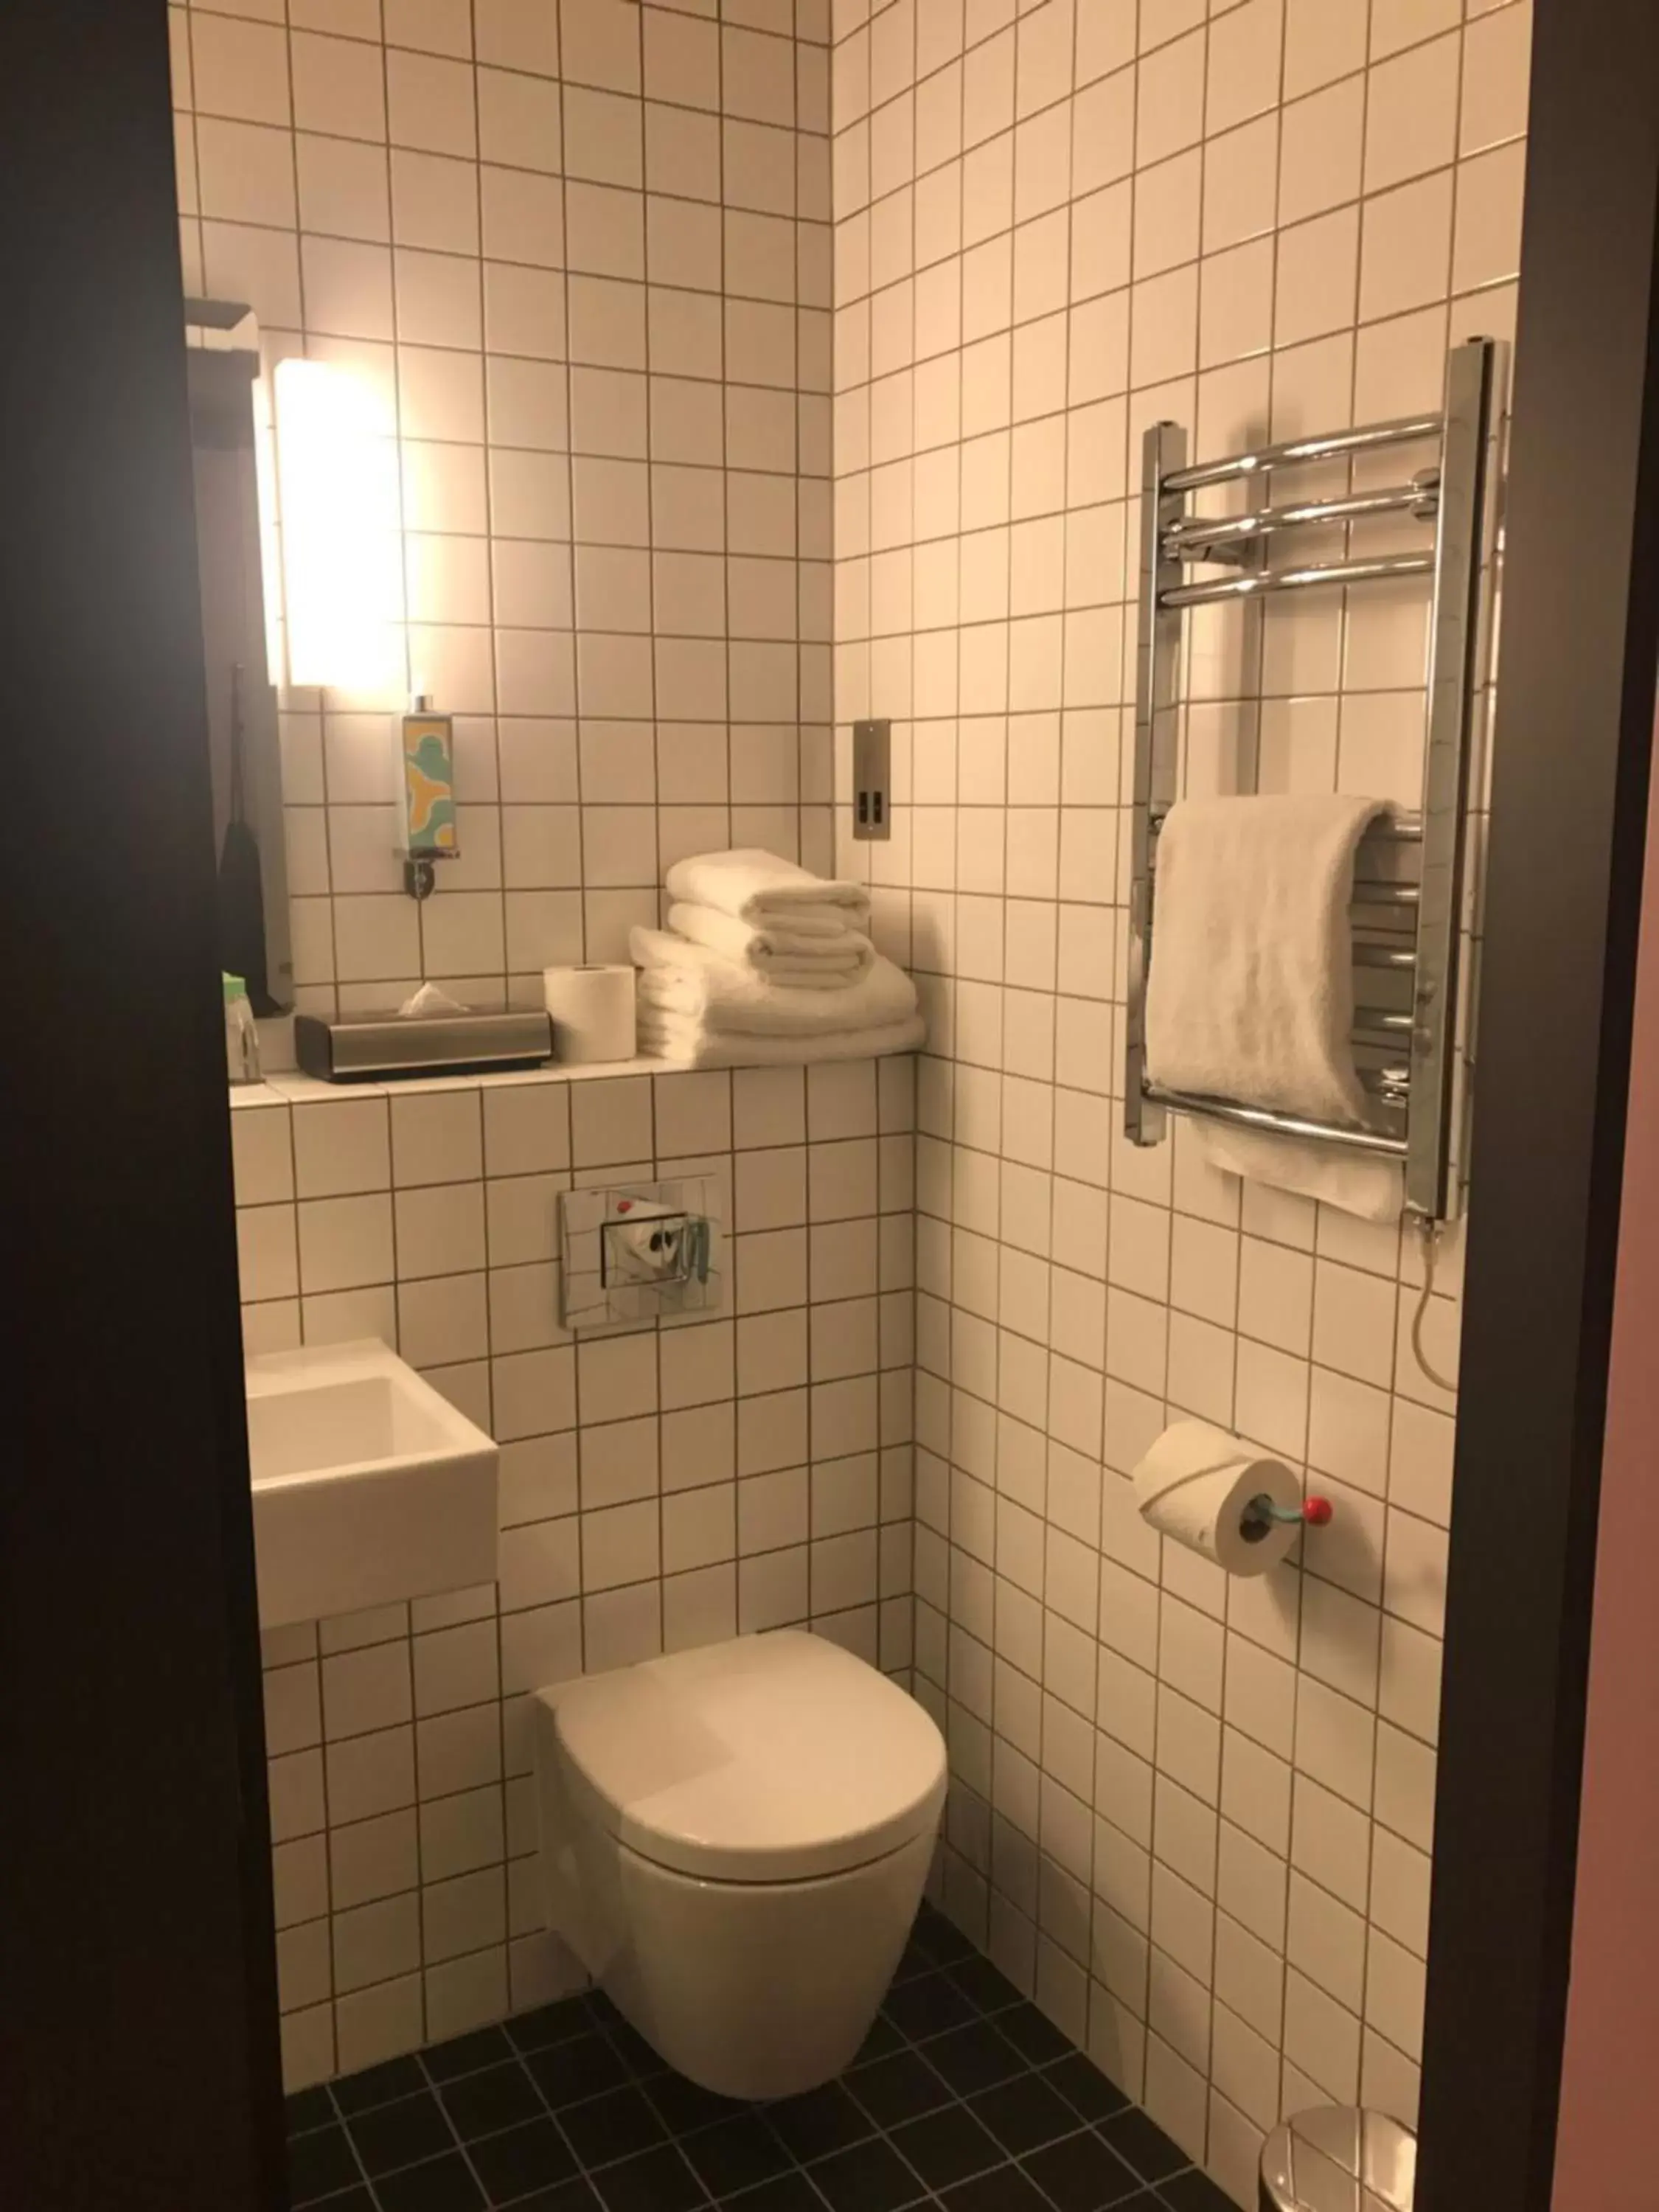 Bathroom in Bullitt Hotel